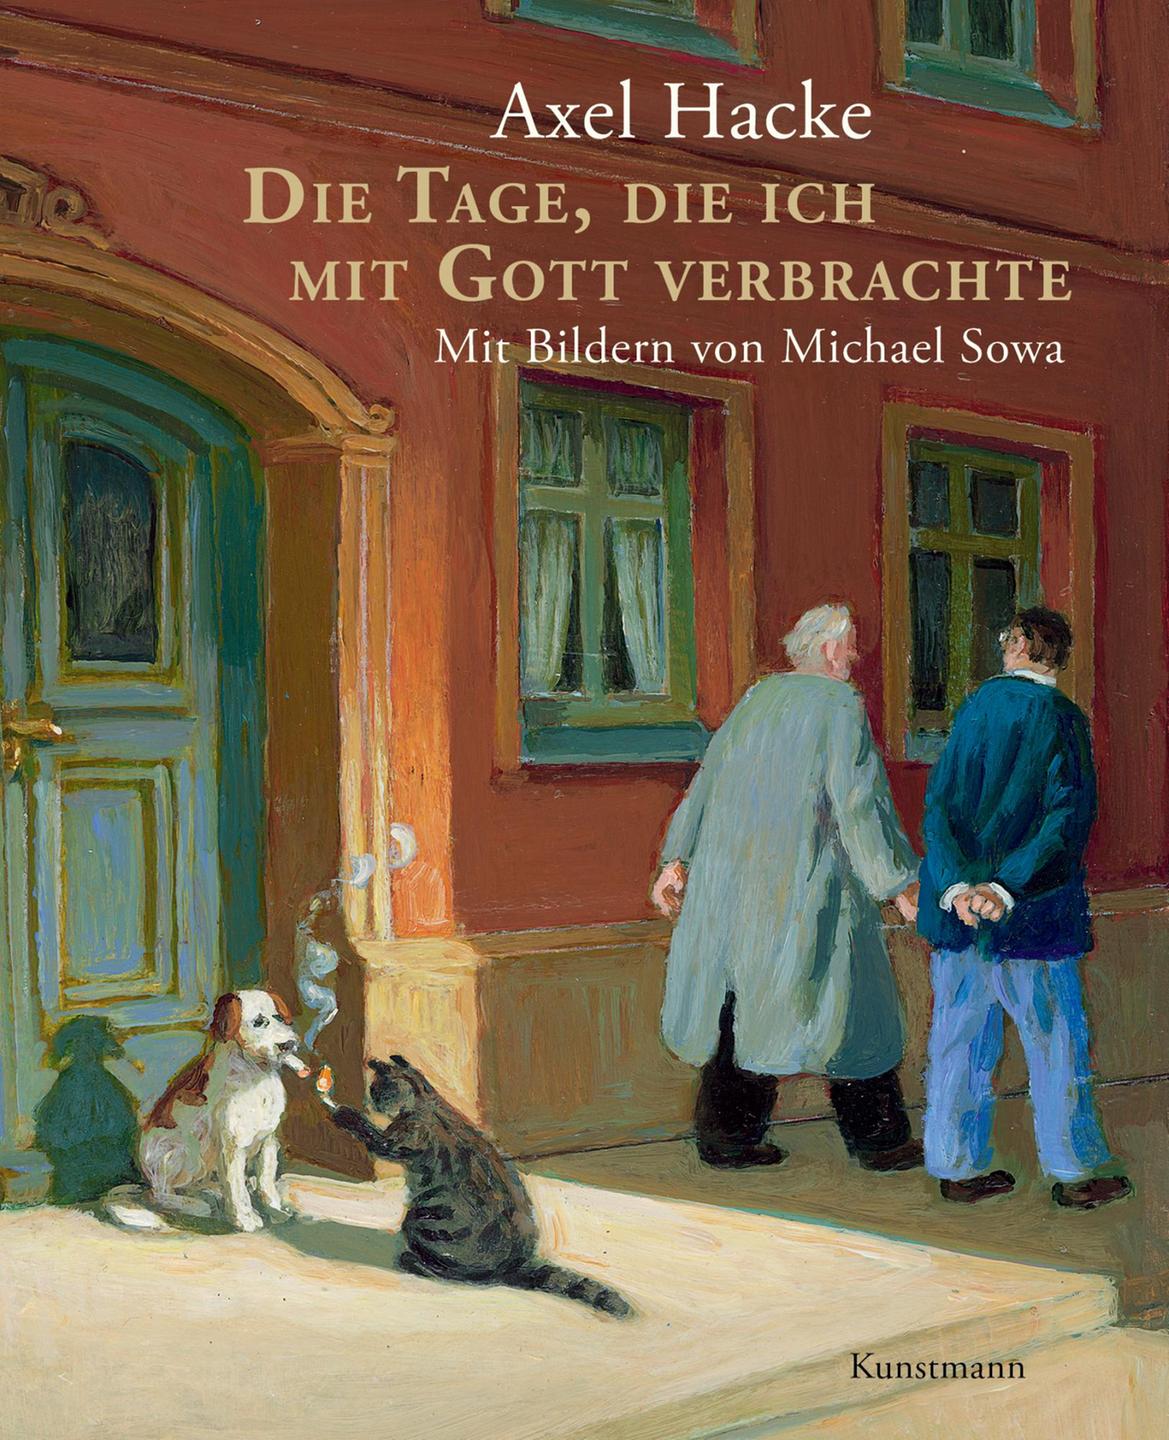 Coverbild des Buchs "Die Tage, die ich mit Gott verbrachte" von Axel Hacke; Antje Kunstmann Verlag 2016, zwei CDs, 122 Minuten, 16,95 Euro
 